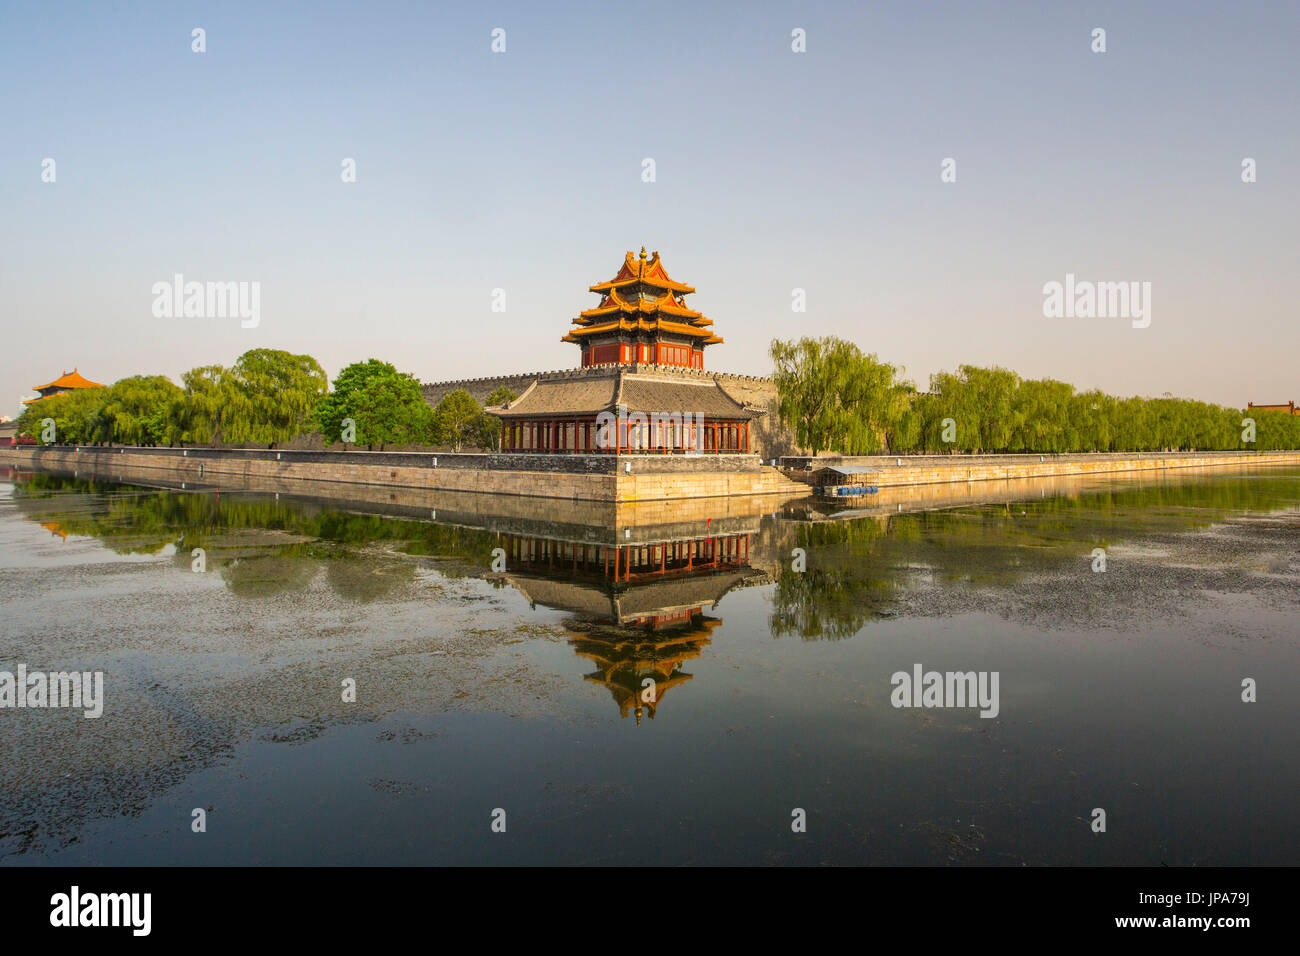 China, Beijing City, The Forbiden City, Palace moat, Stock Photo